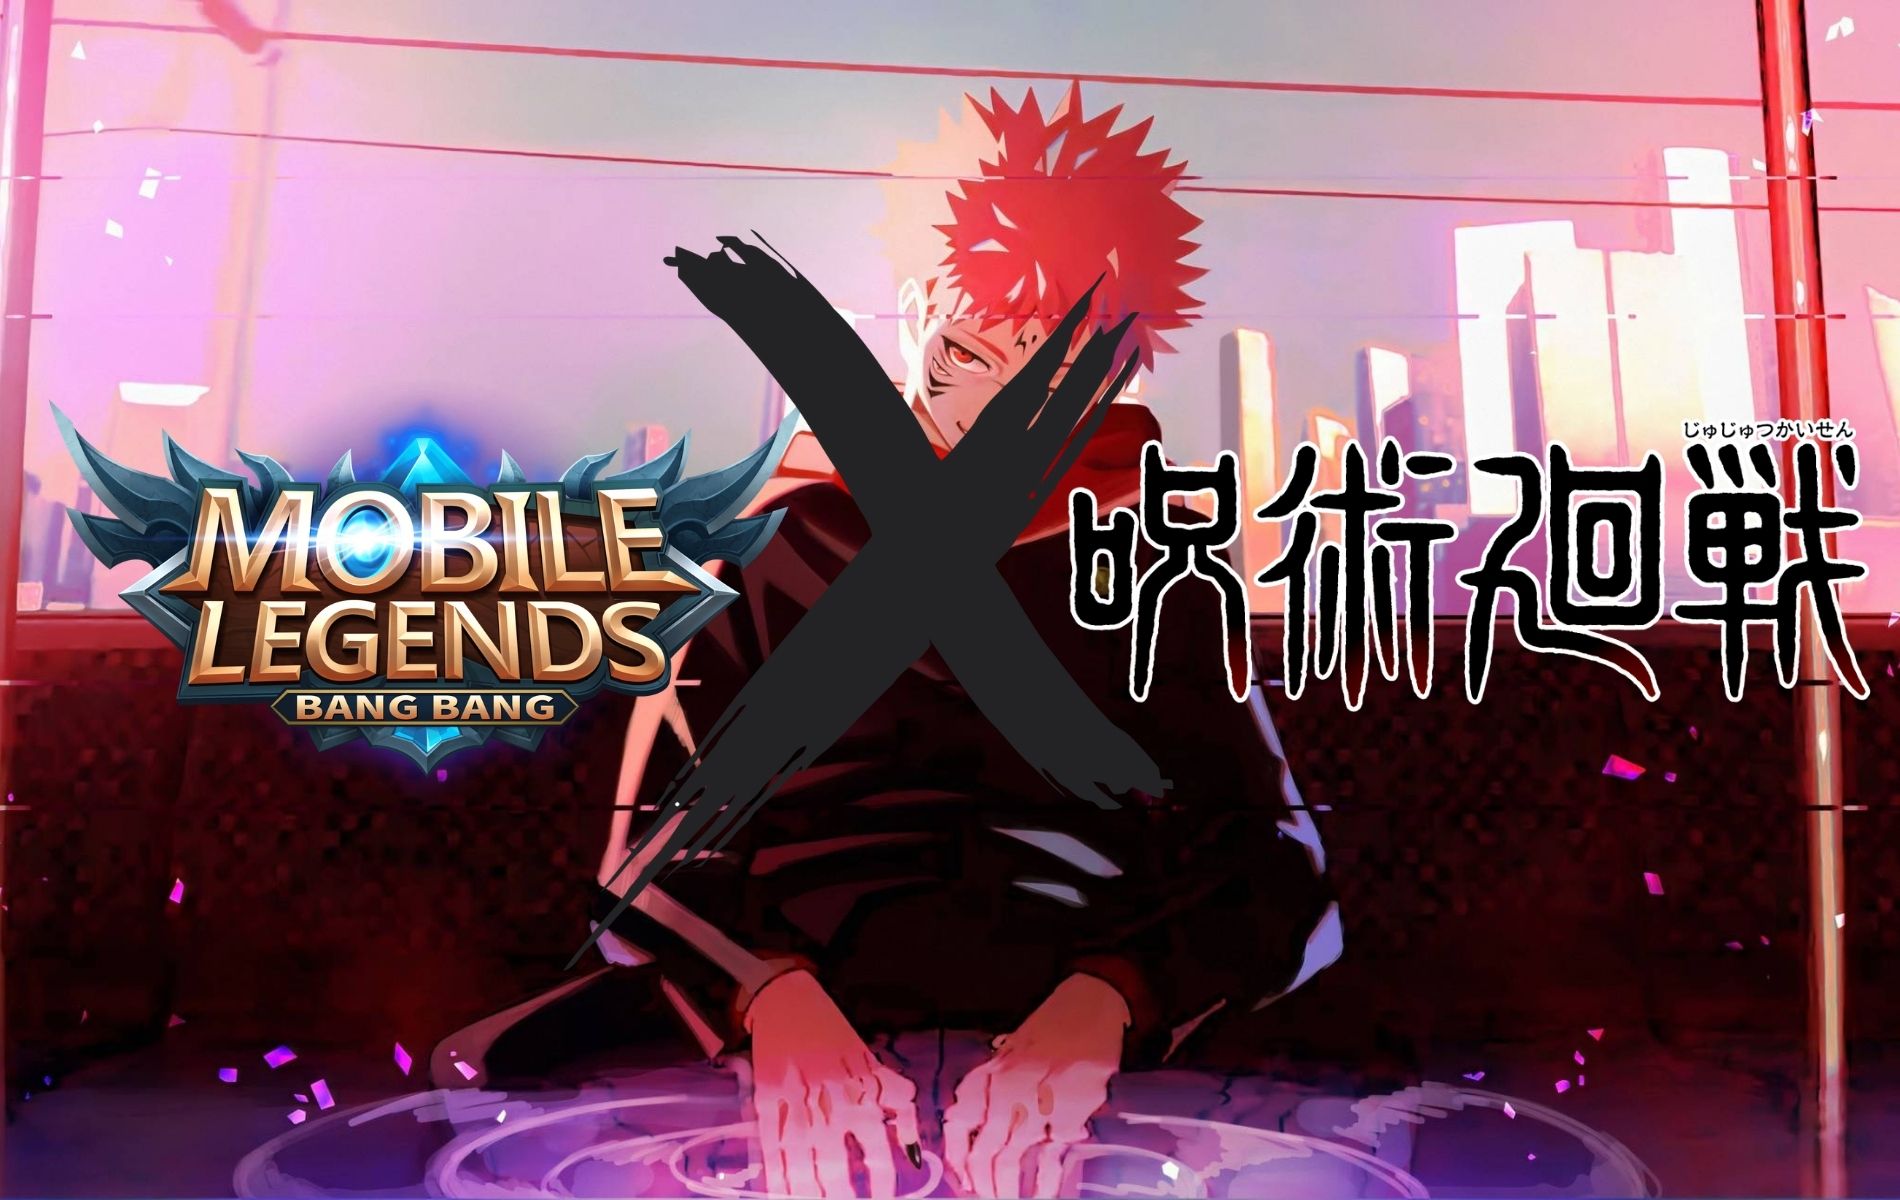 Mobile Legends Segera Kolaborasi dengan Anime Jujutsu Kaisen